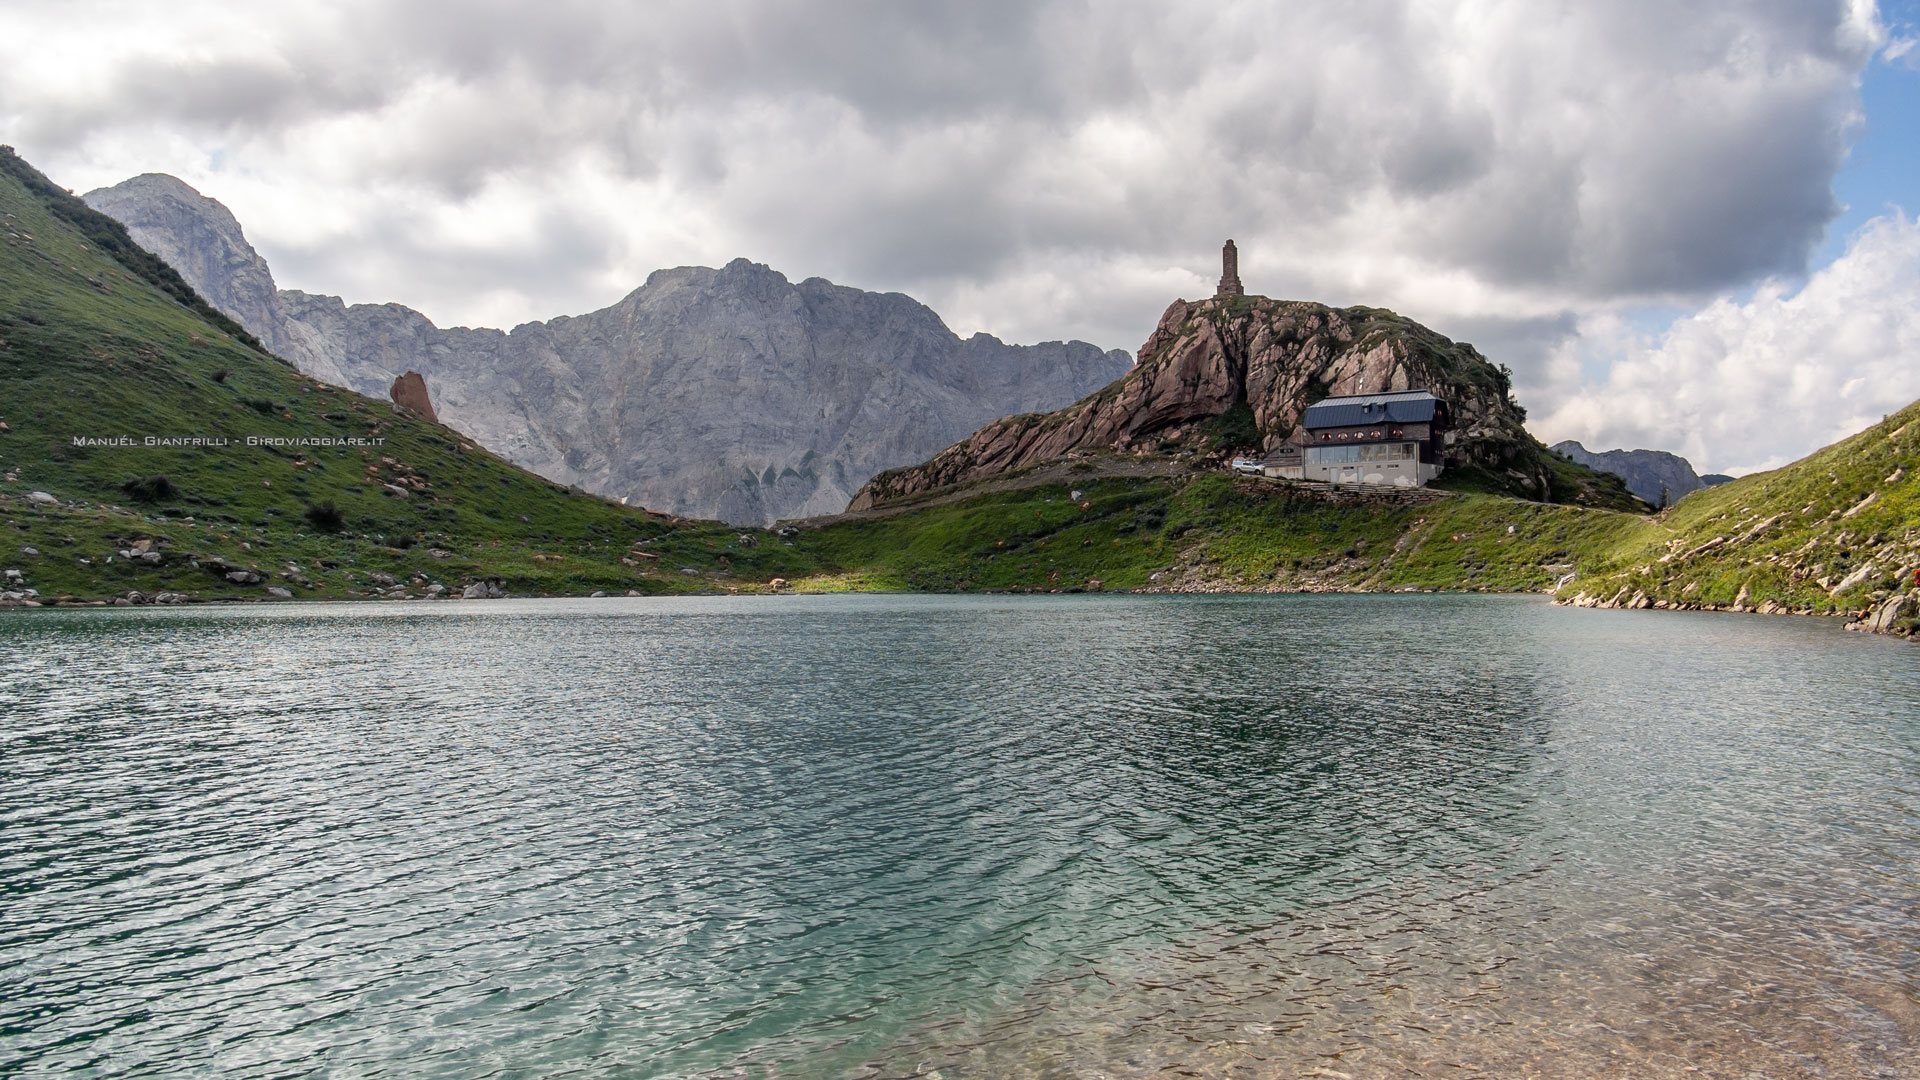 Il rifugio austriaco sulla sponda opposta del lago